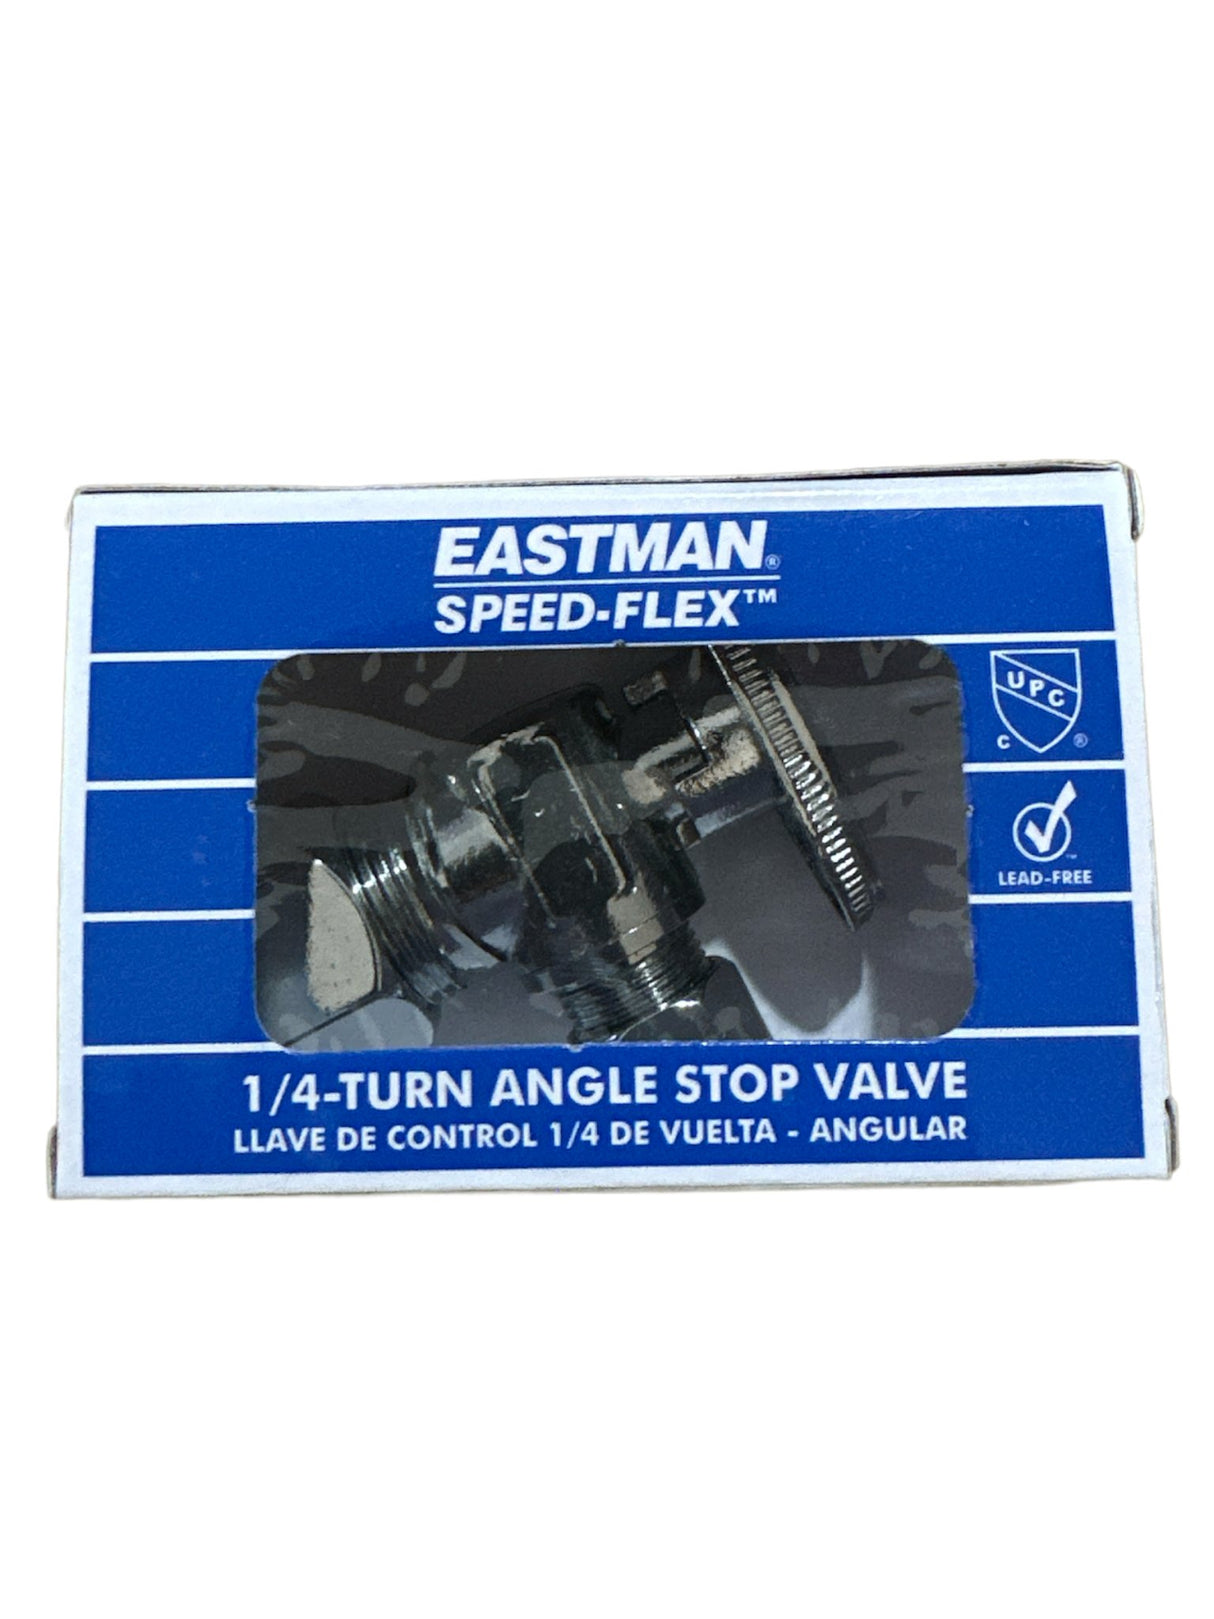 Válvula de cierre en ángulo de 1/4 de vuelta Eastman Speed-Flex: 5/8 pulg. OD Comp x 3/8 pulg. OD Comp